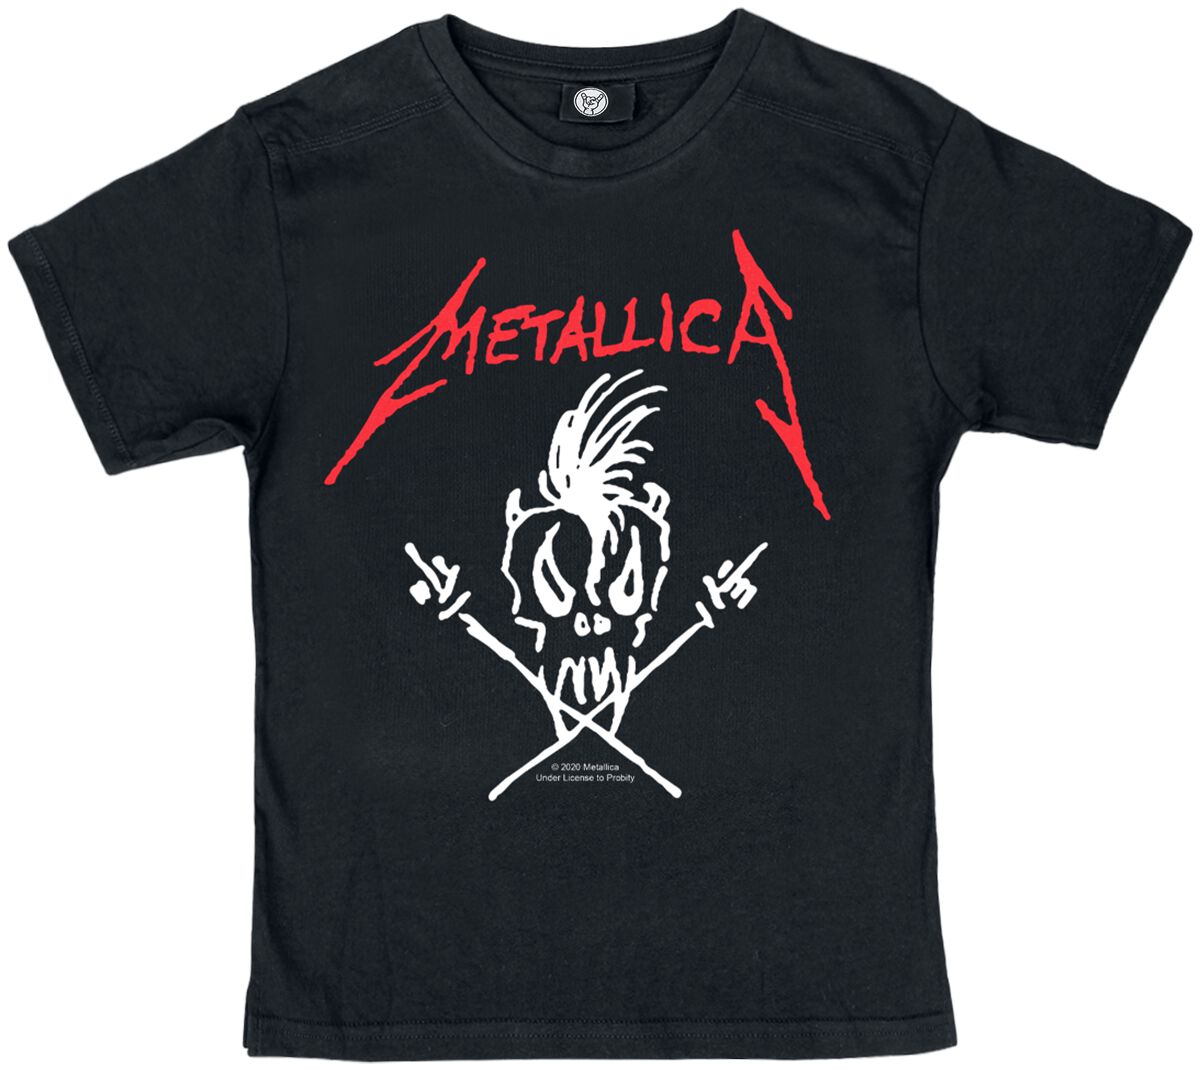 Metallica T-Shirt - Metal-Kids - Scary Guy - 92 bis 164 - für Mädchen & Jungen - Größe 164 - schwarz  - Lizenziertes Merchandise!